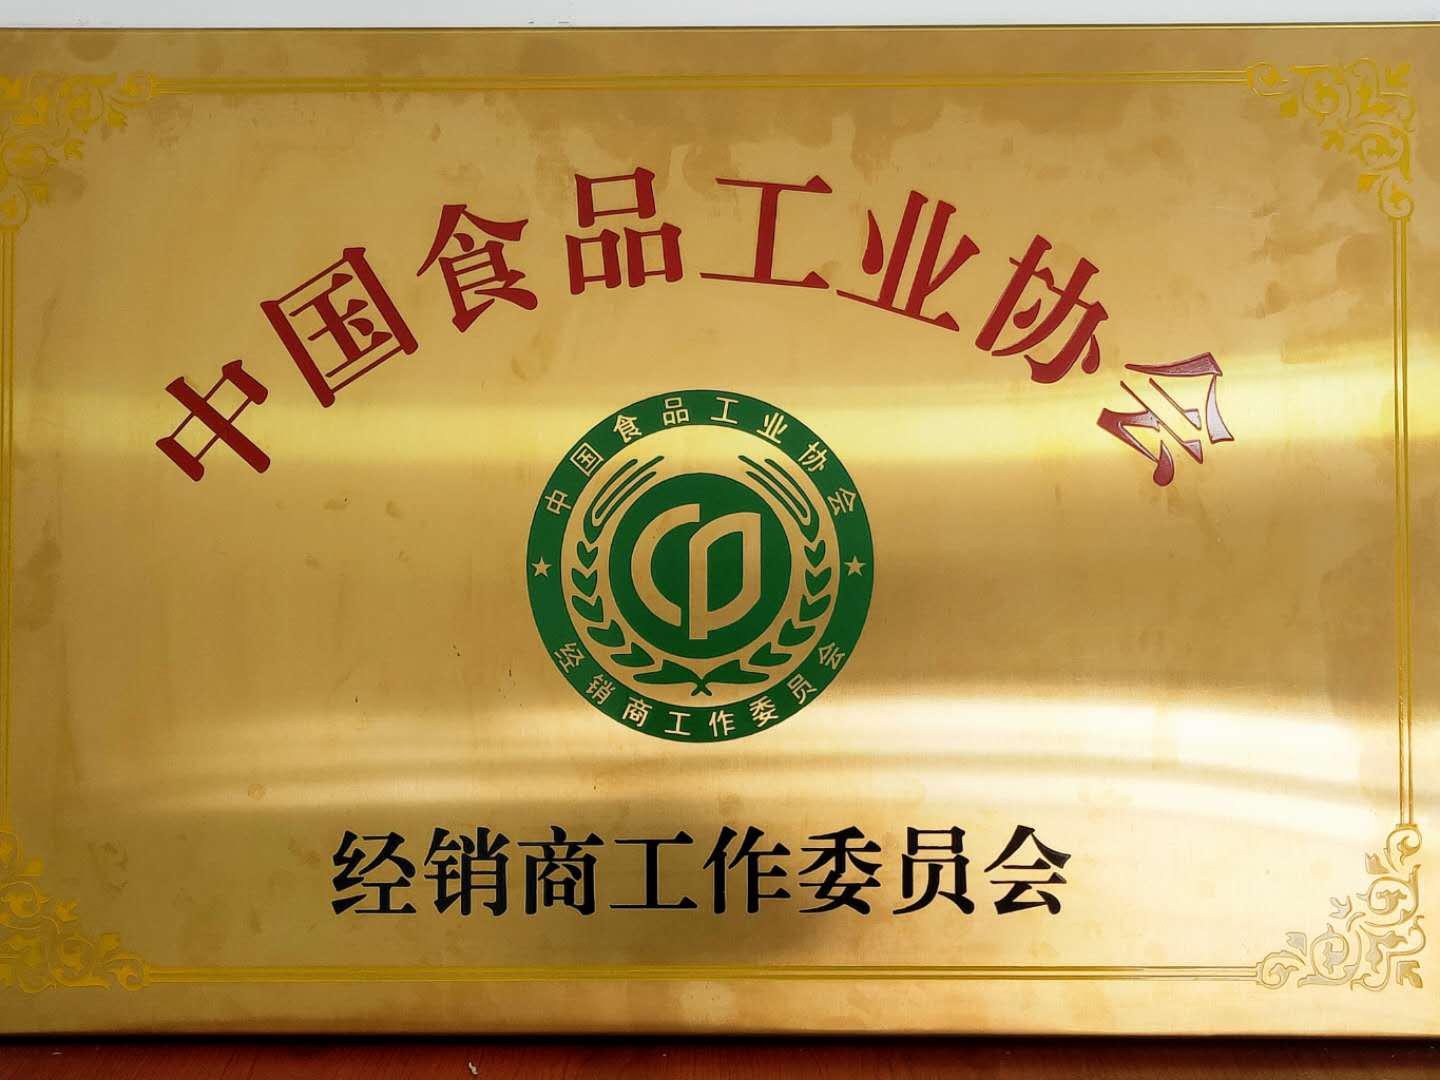 中国食品工业协会经销商委员会